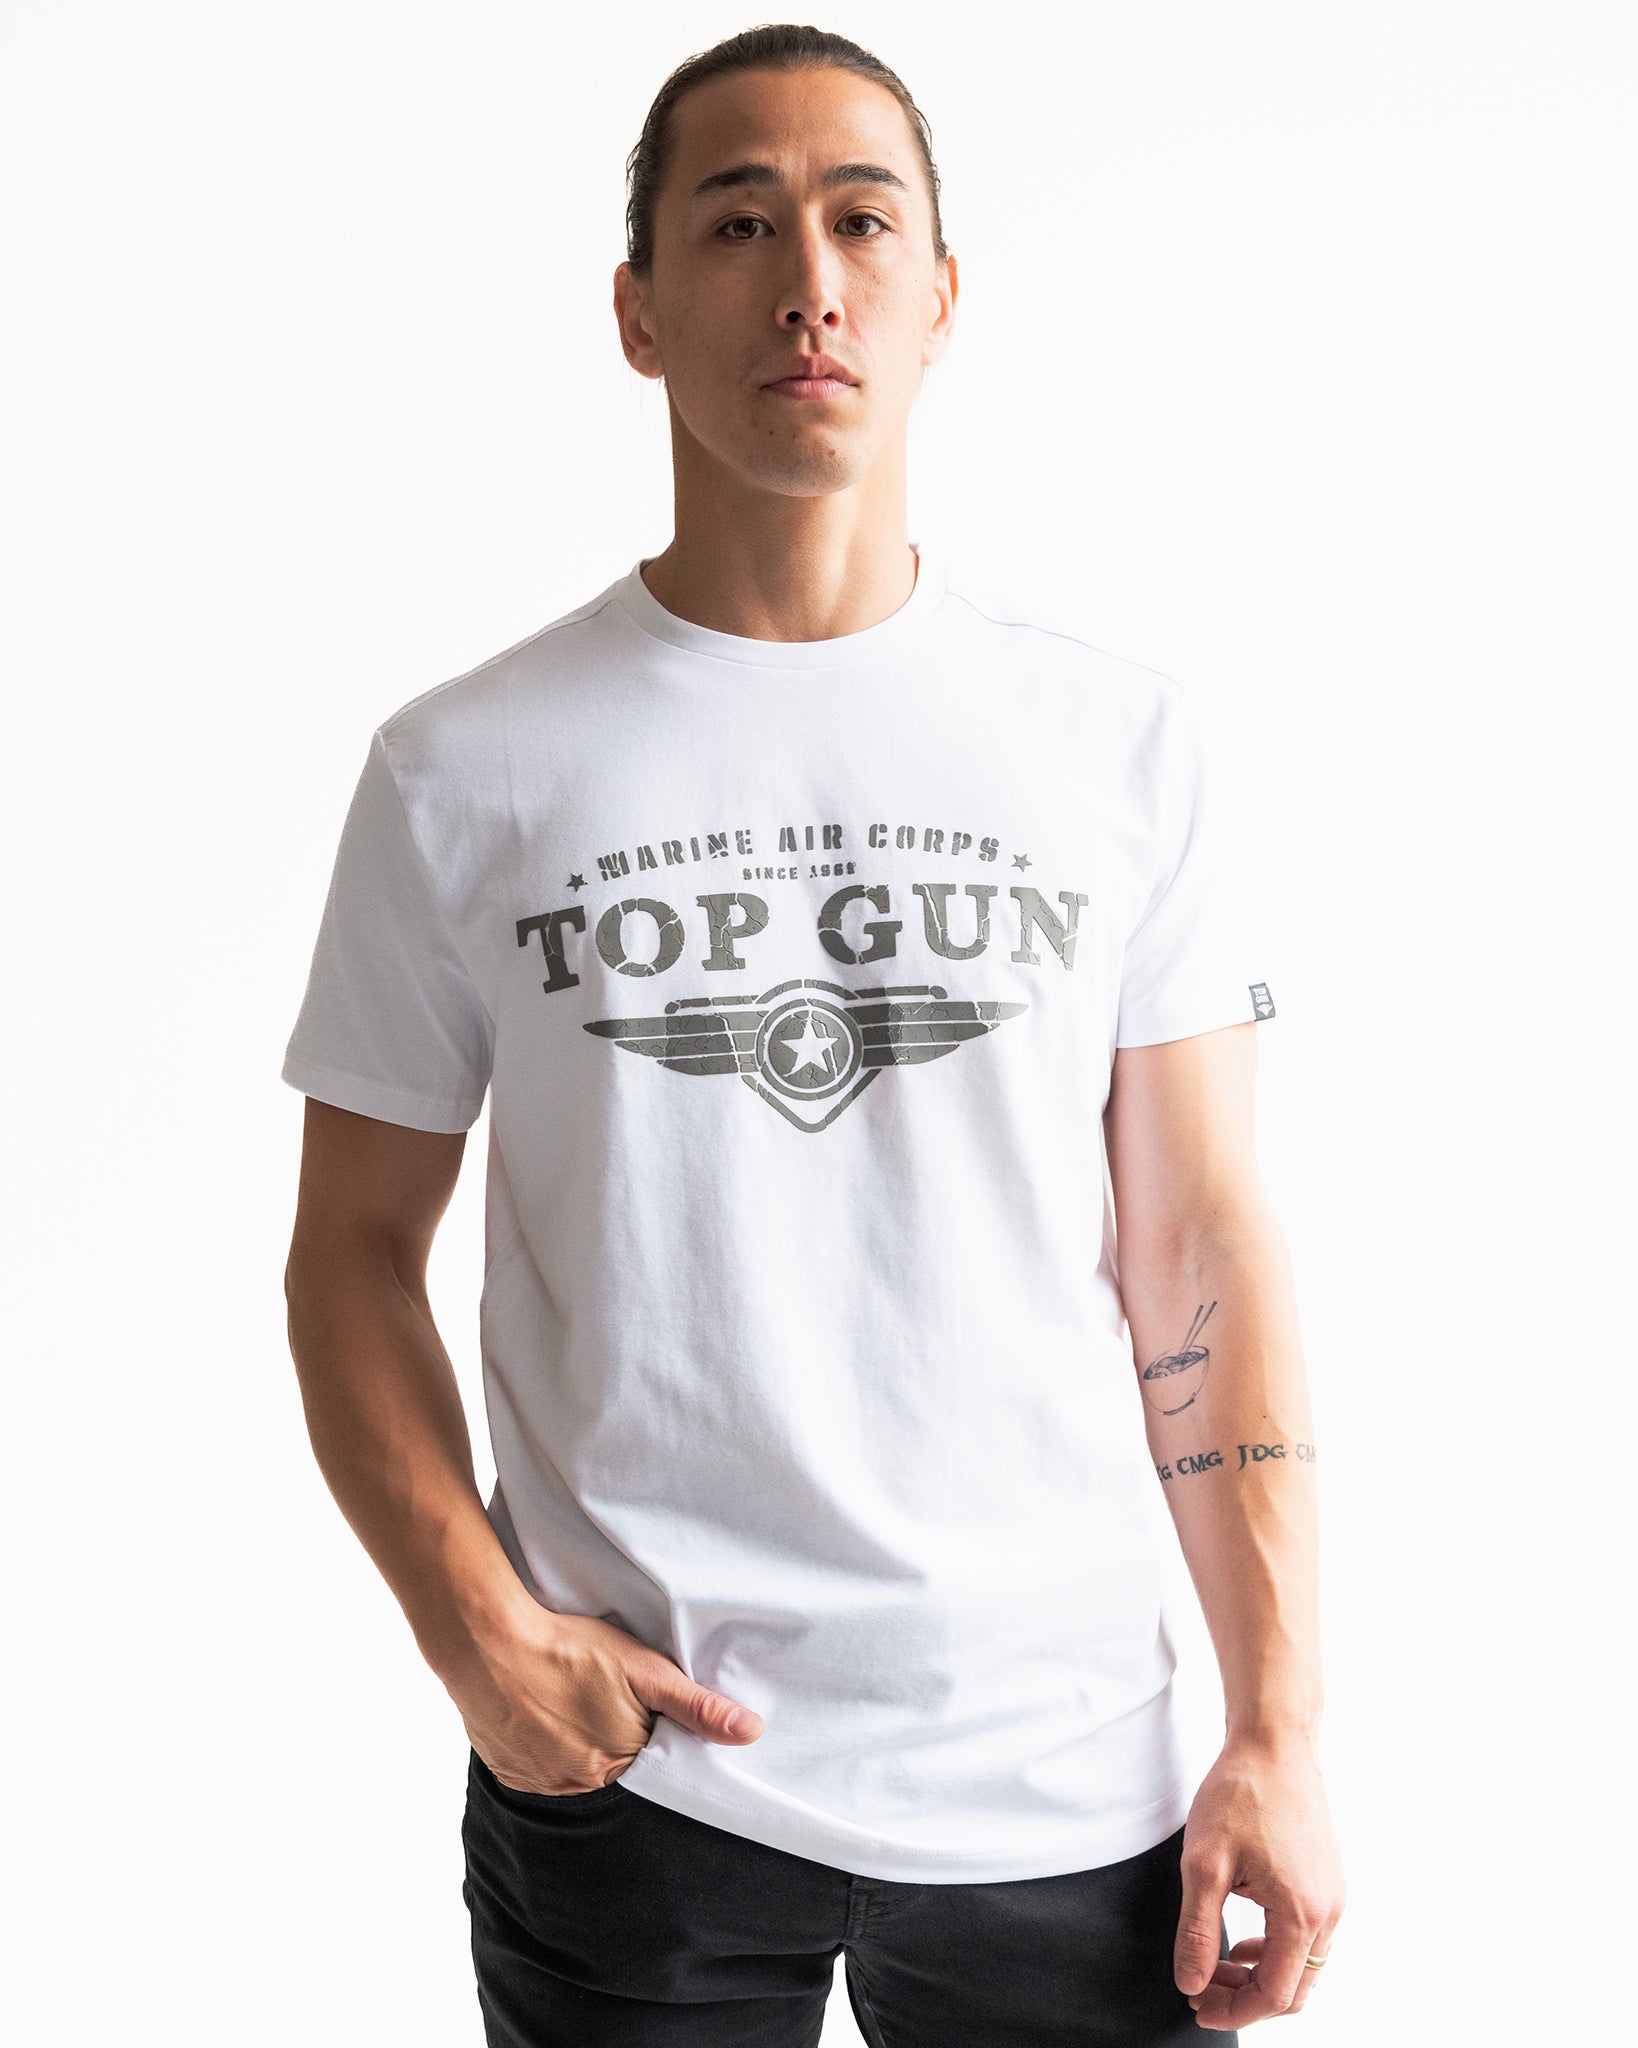 TOP GUN® 'FIGHTERS CREW' TEE, TOP GUN Clothing